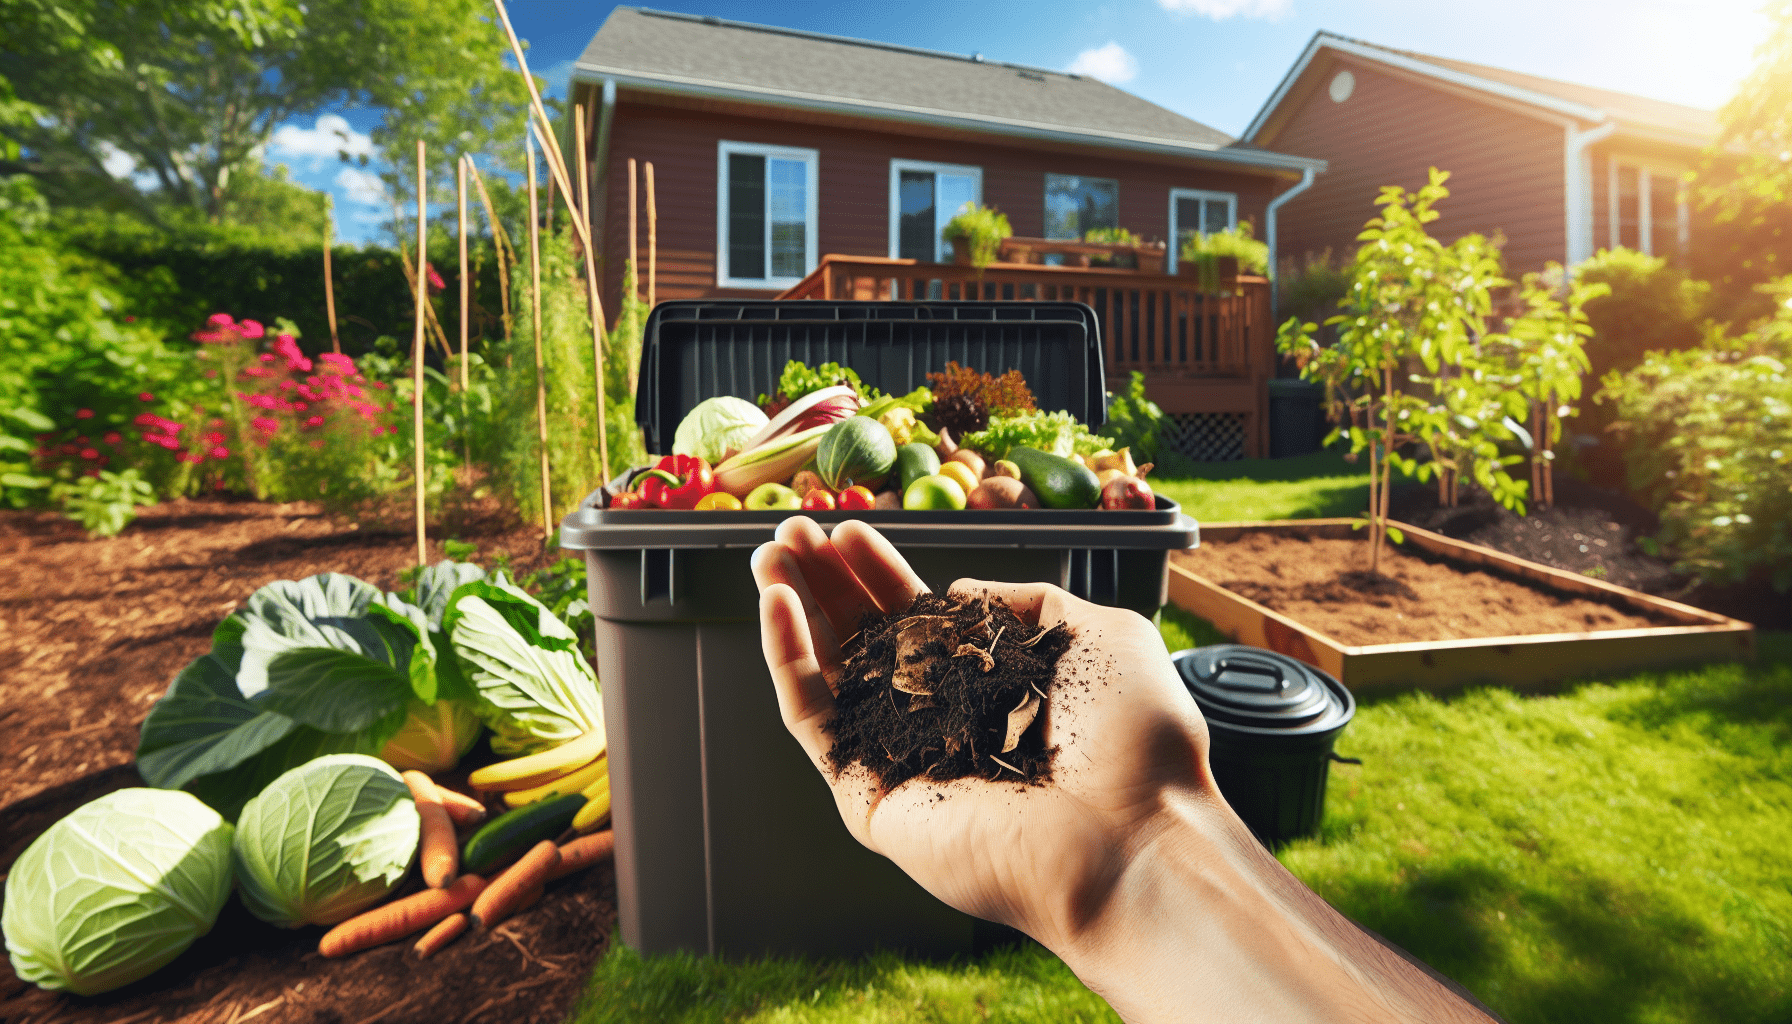 De Voordelen Van Thuis Composteren Voor Het Milieu